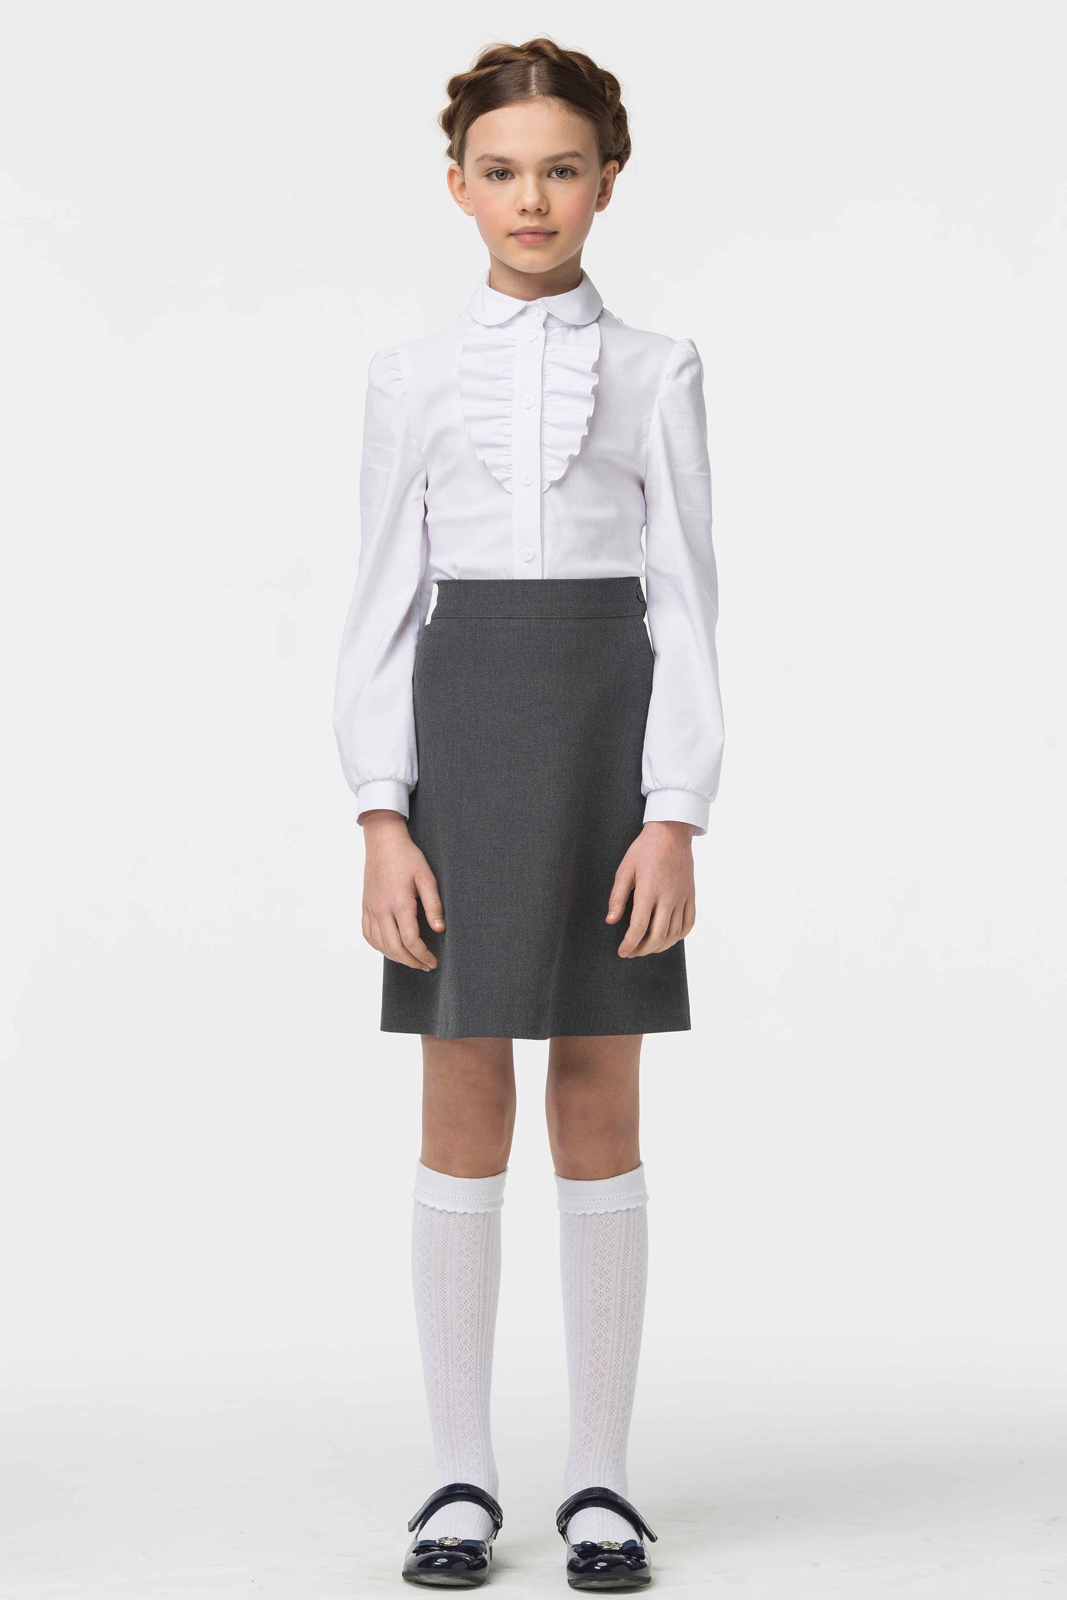 Блузка для девочки Смена, цвет: белый. 16с507. Размер 134